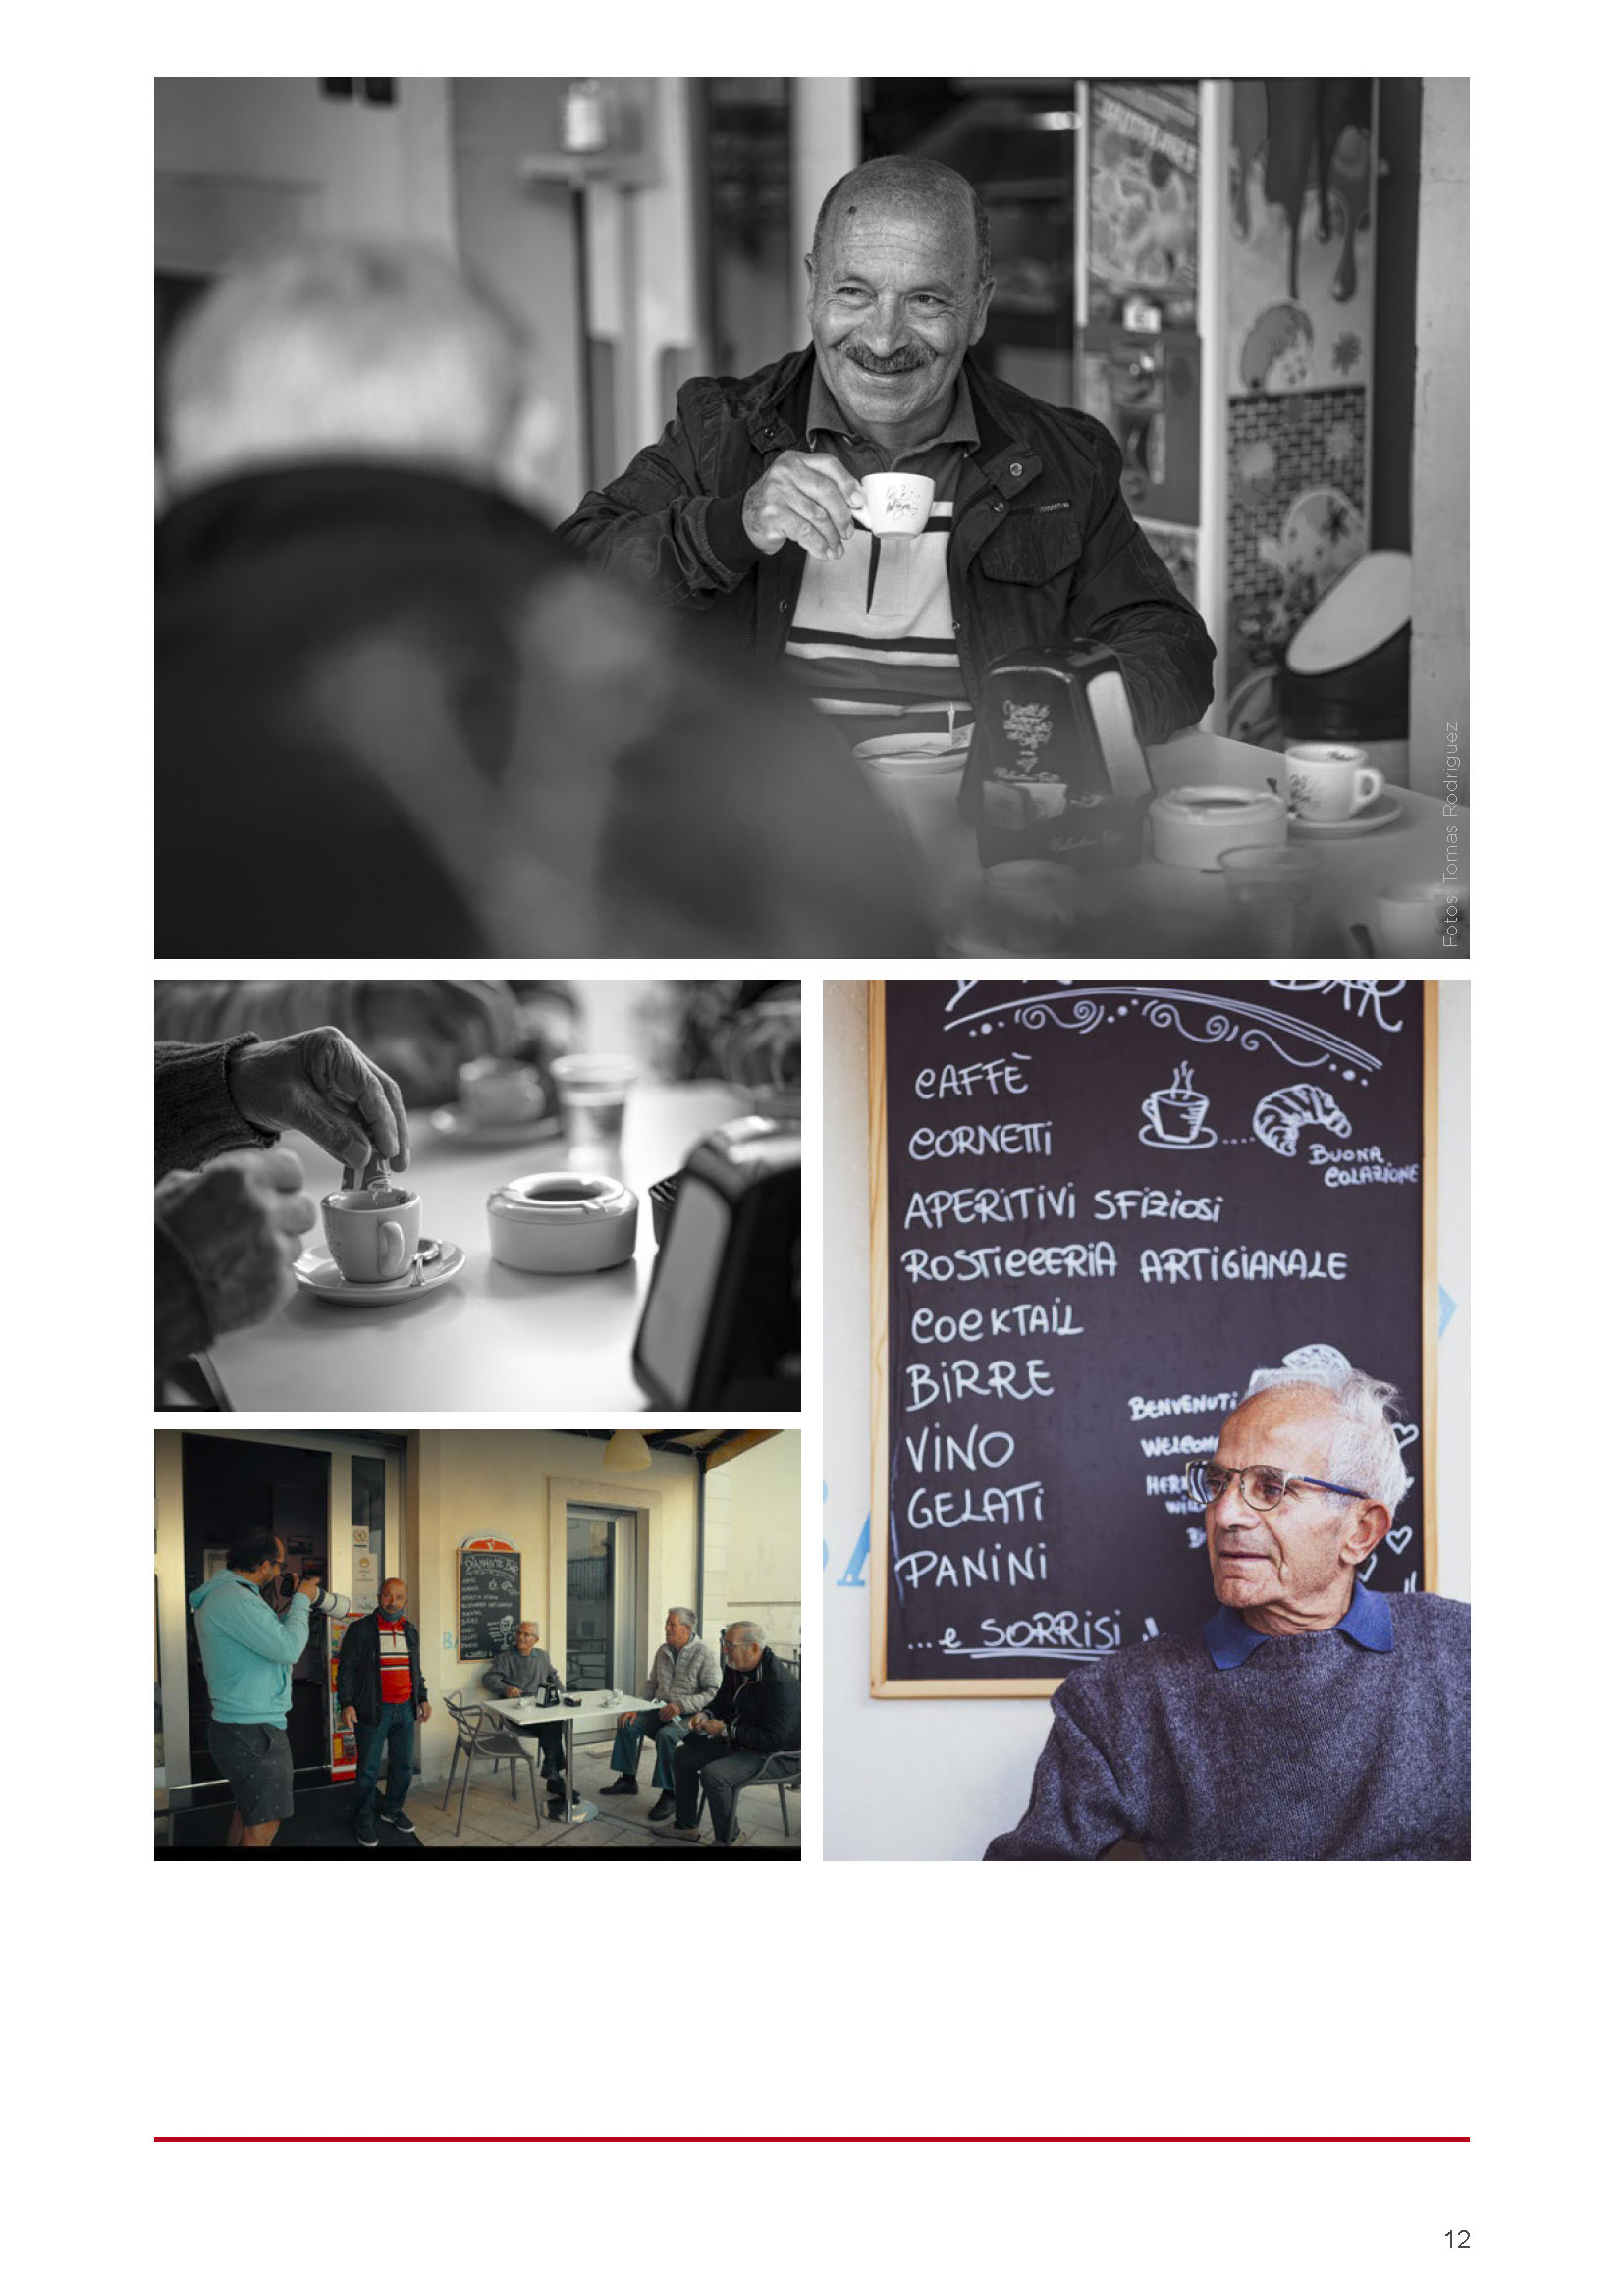 Eine Collage aus drei Bildern: Oben ist ein älterer Mann zu sehen, der lächelt und eine Kaffeetasse hält; in der Mitte ist eine Nahaufnahme von zwei Kaffeetassen zu sehen; unten ist eine Gruppe älterer Personen zu sehen, die sich bei einer Besprechung oder im Unterricht unterhalten. © Fotografie Tomas Rodriguez